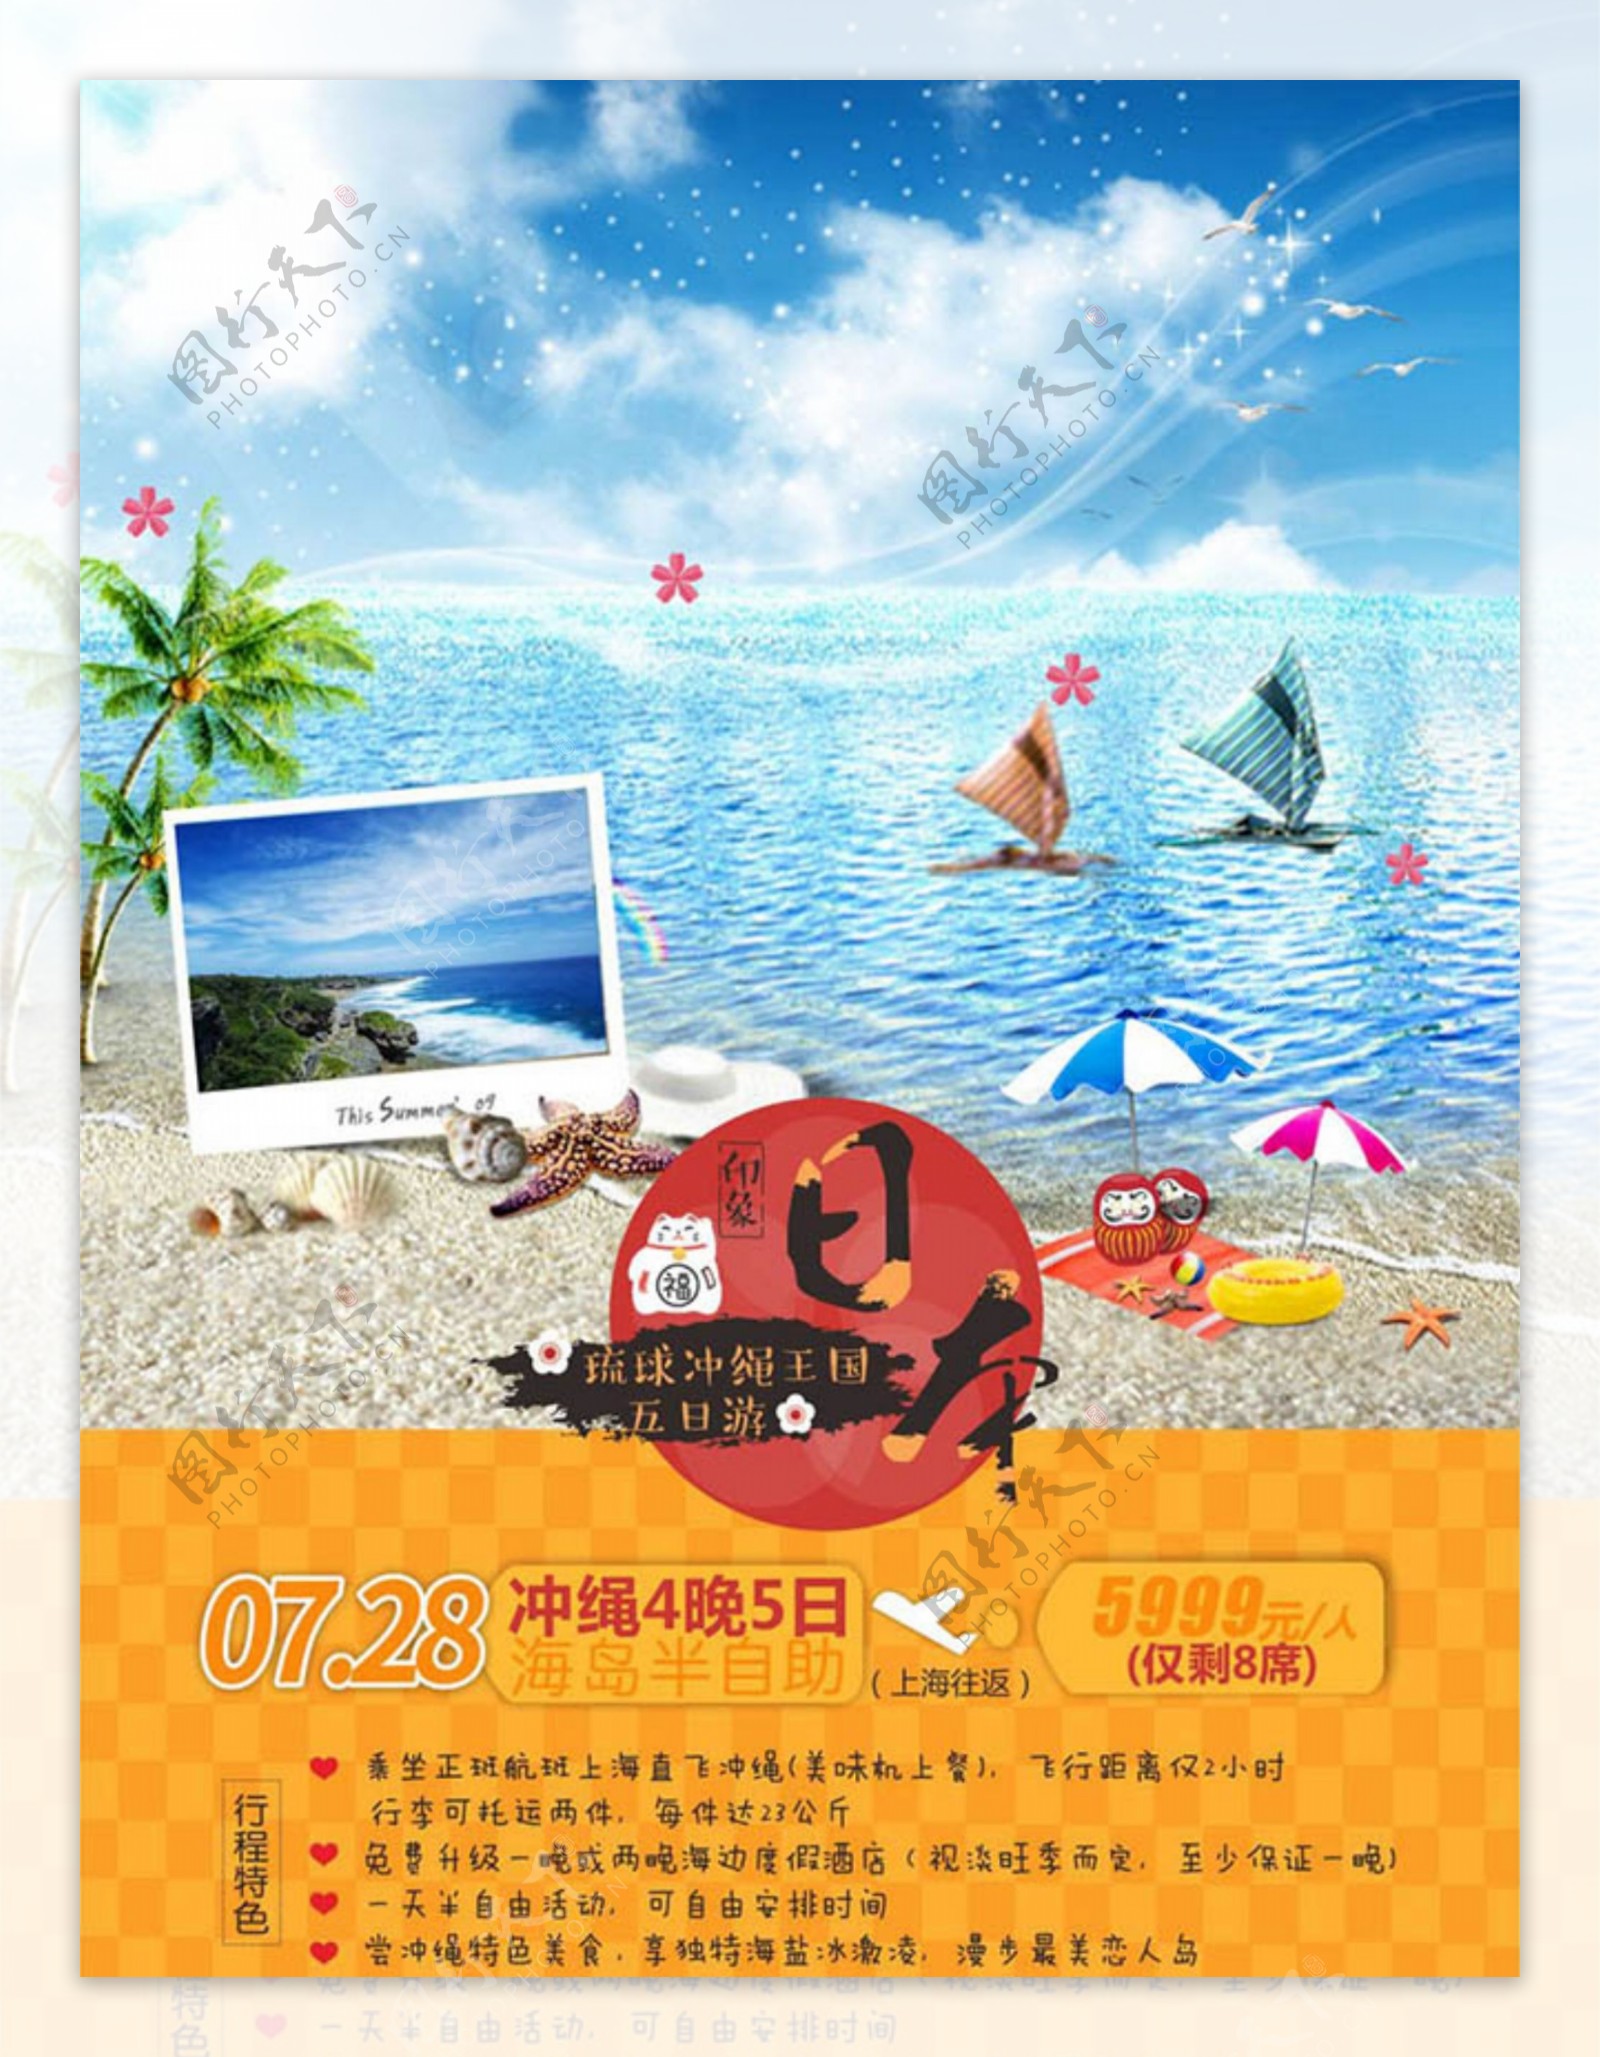 日本冲绳王国5日游旅游海报设计